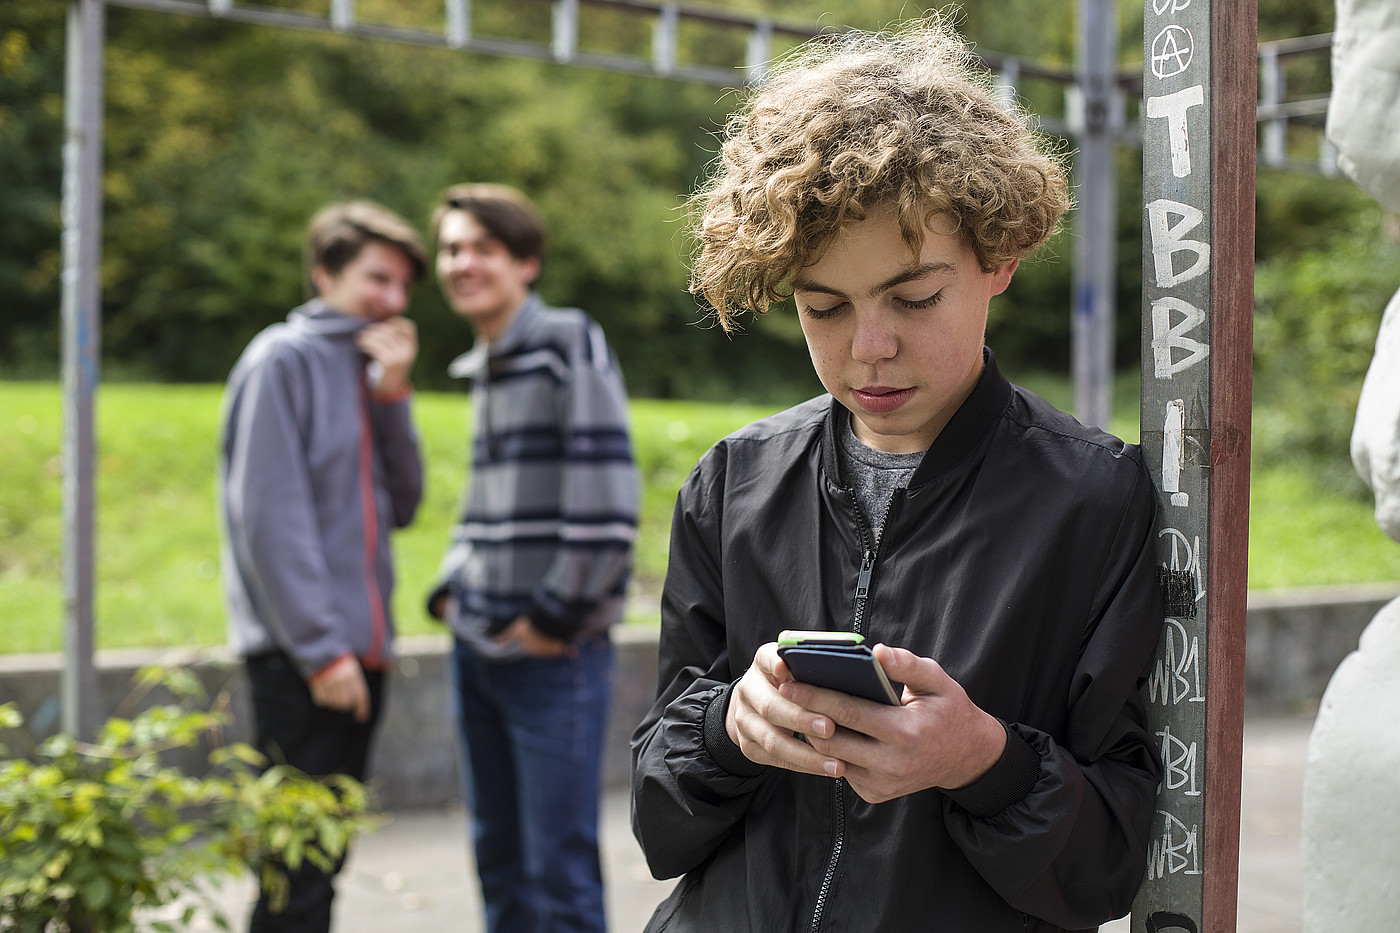 Un adolescent est dehors sur son téléphone portable. En arrière-plan, deux autres jeunes se moquent de lui.